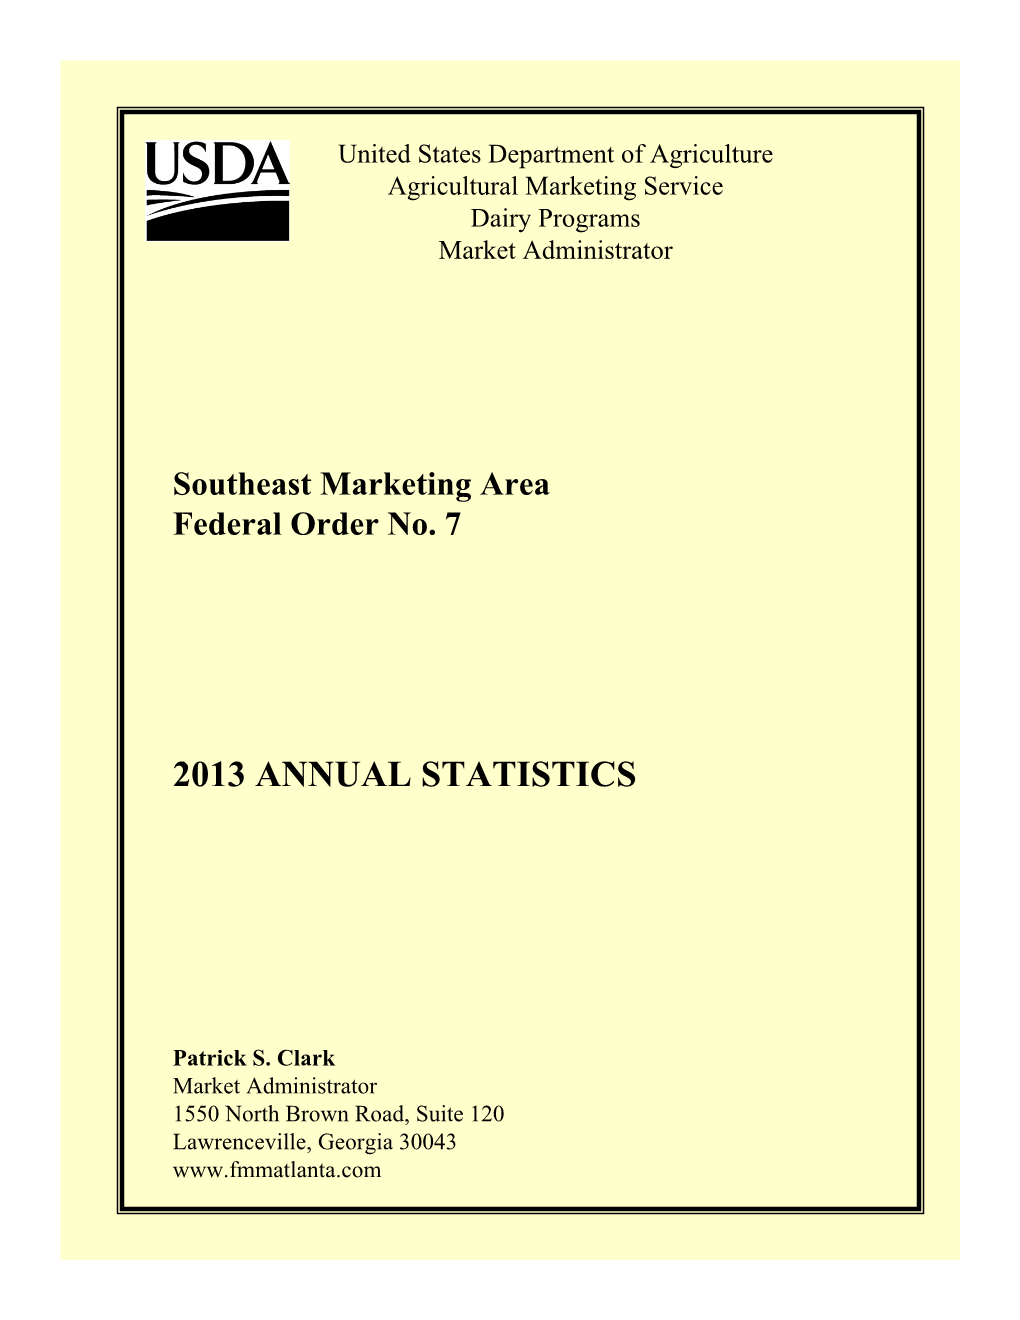 2013 Annual Statistics